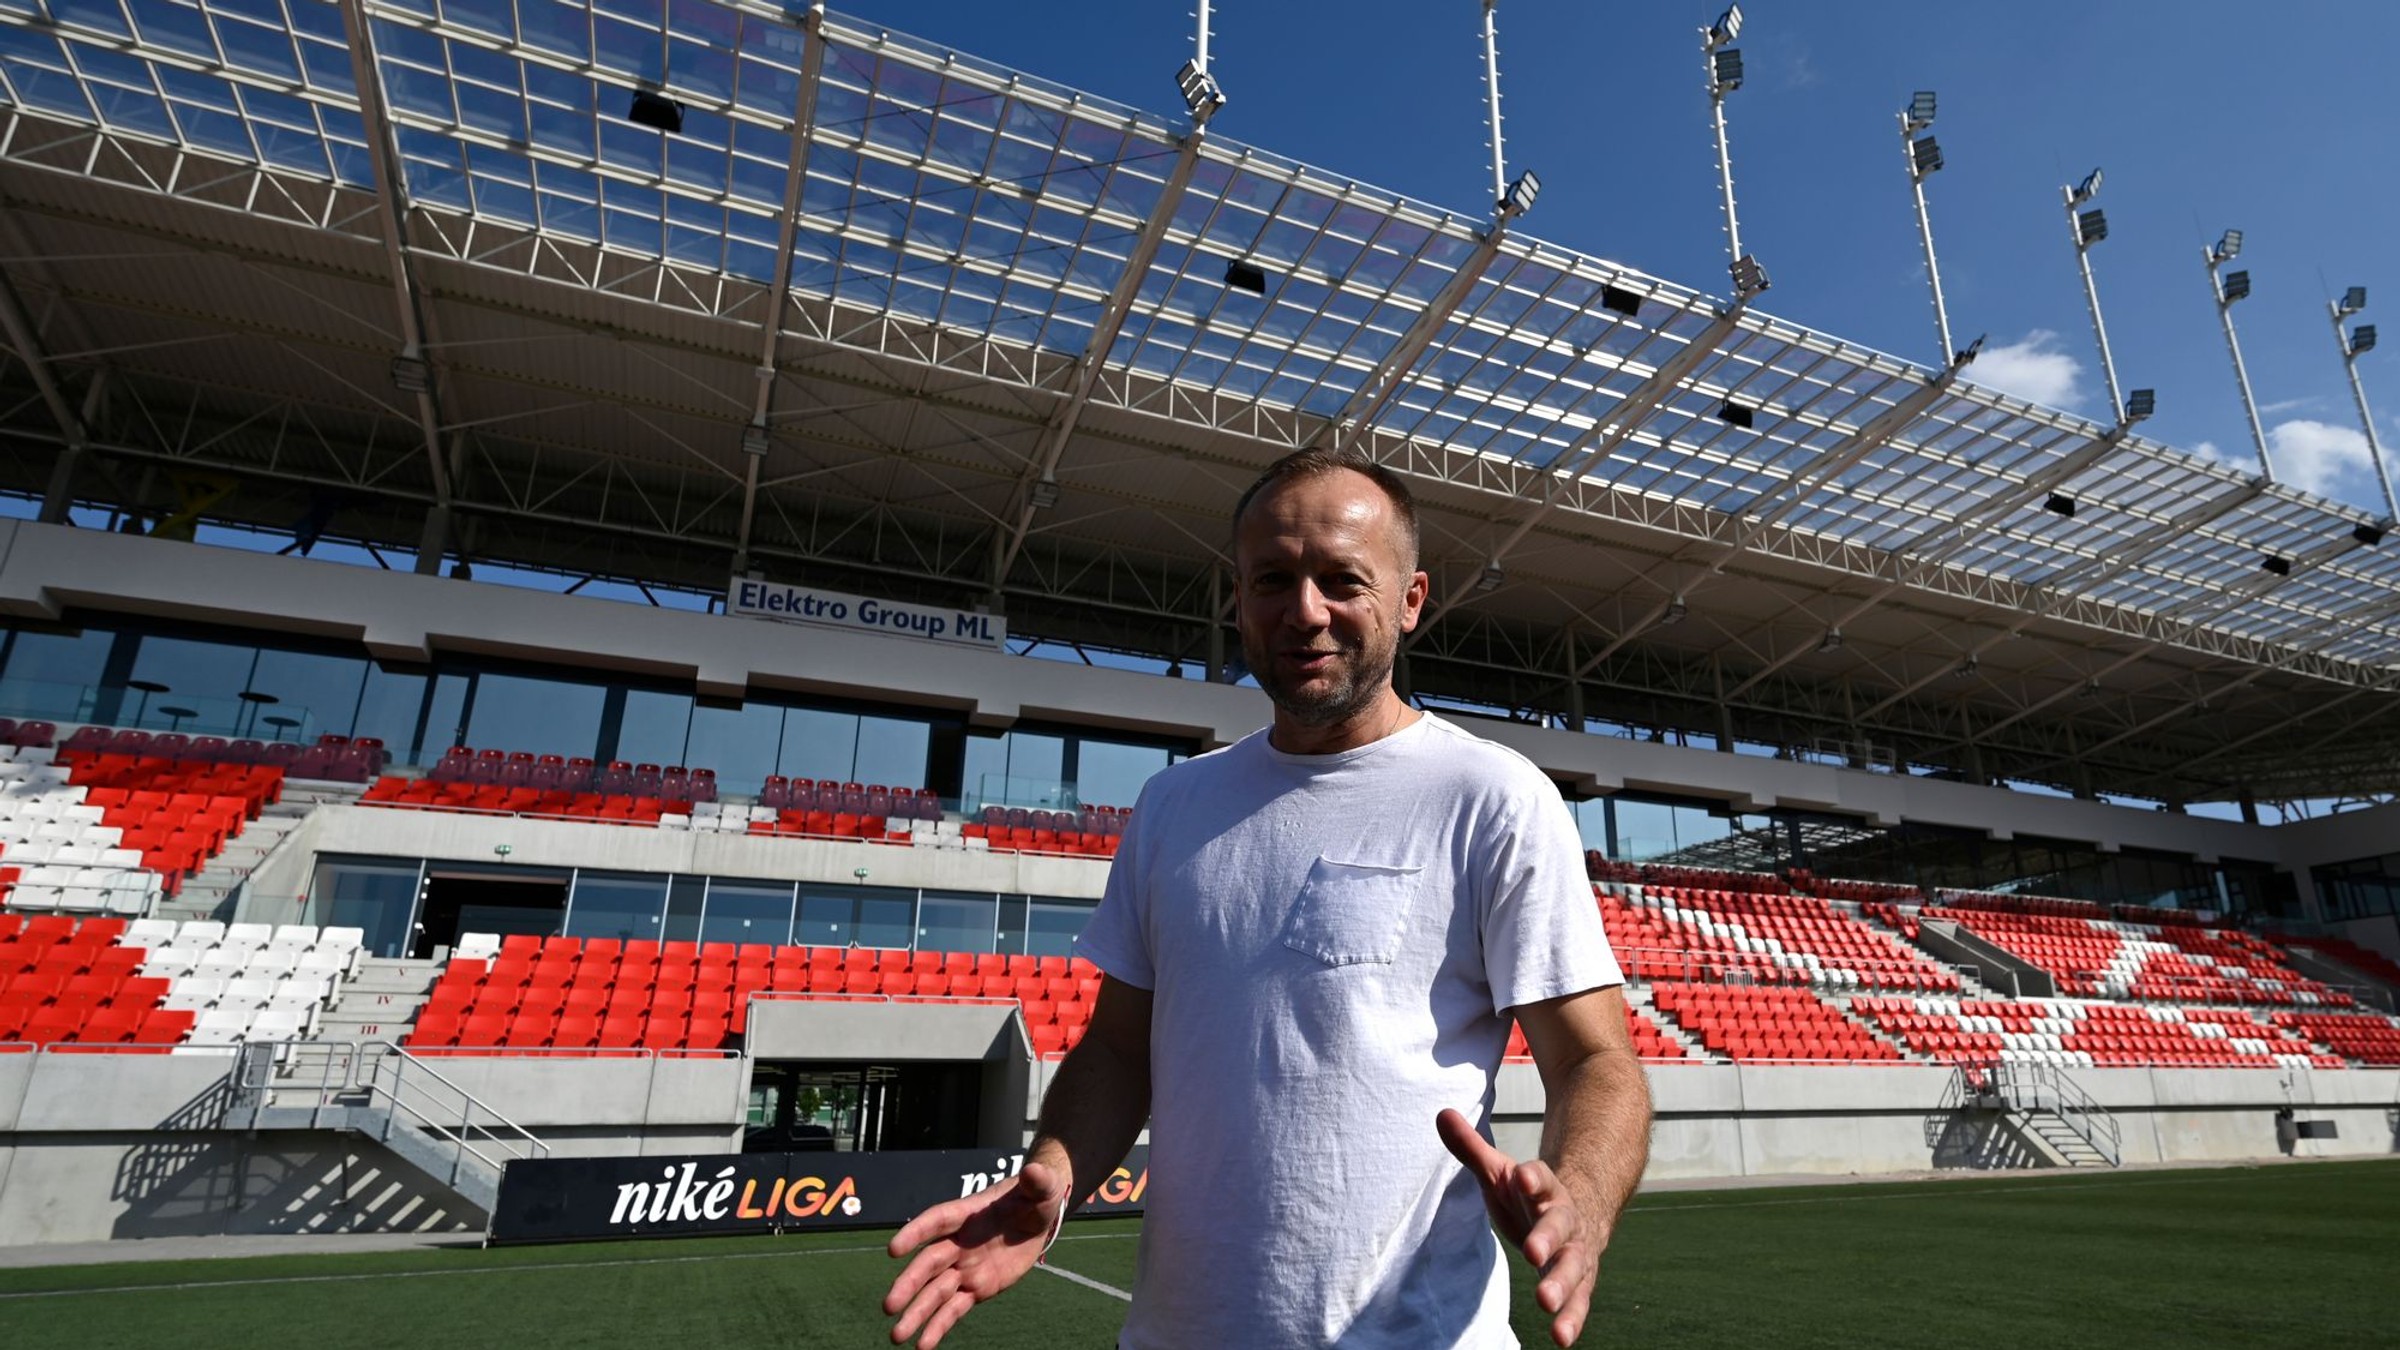 Generálny manažér AS Trenčín Róbert Rybníček stojí pred novou hlavnou tribúnou futbalového štadióna.

